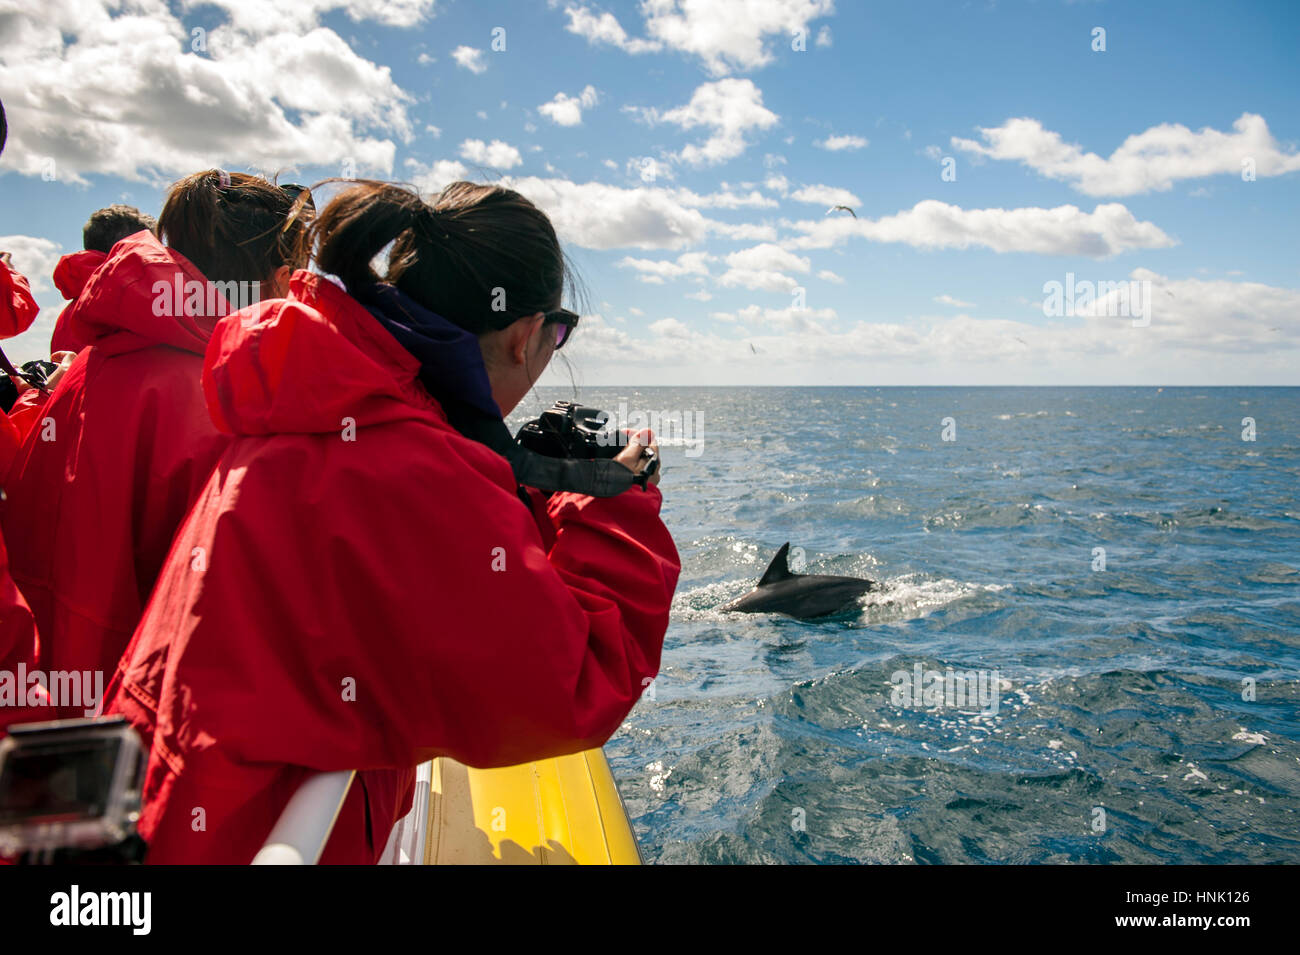 Les touristes photographier les dauphins au large de la côte de la péninsule de Tasman. Les touristes sont sur une croisière avec pennicott Wilderness Journeys. Banque D'Images